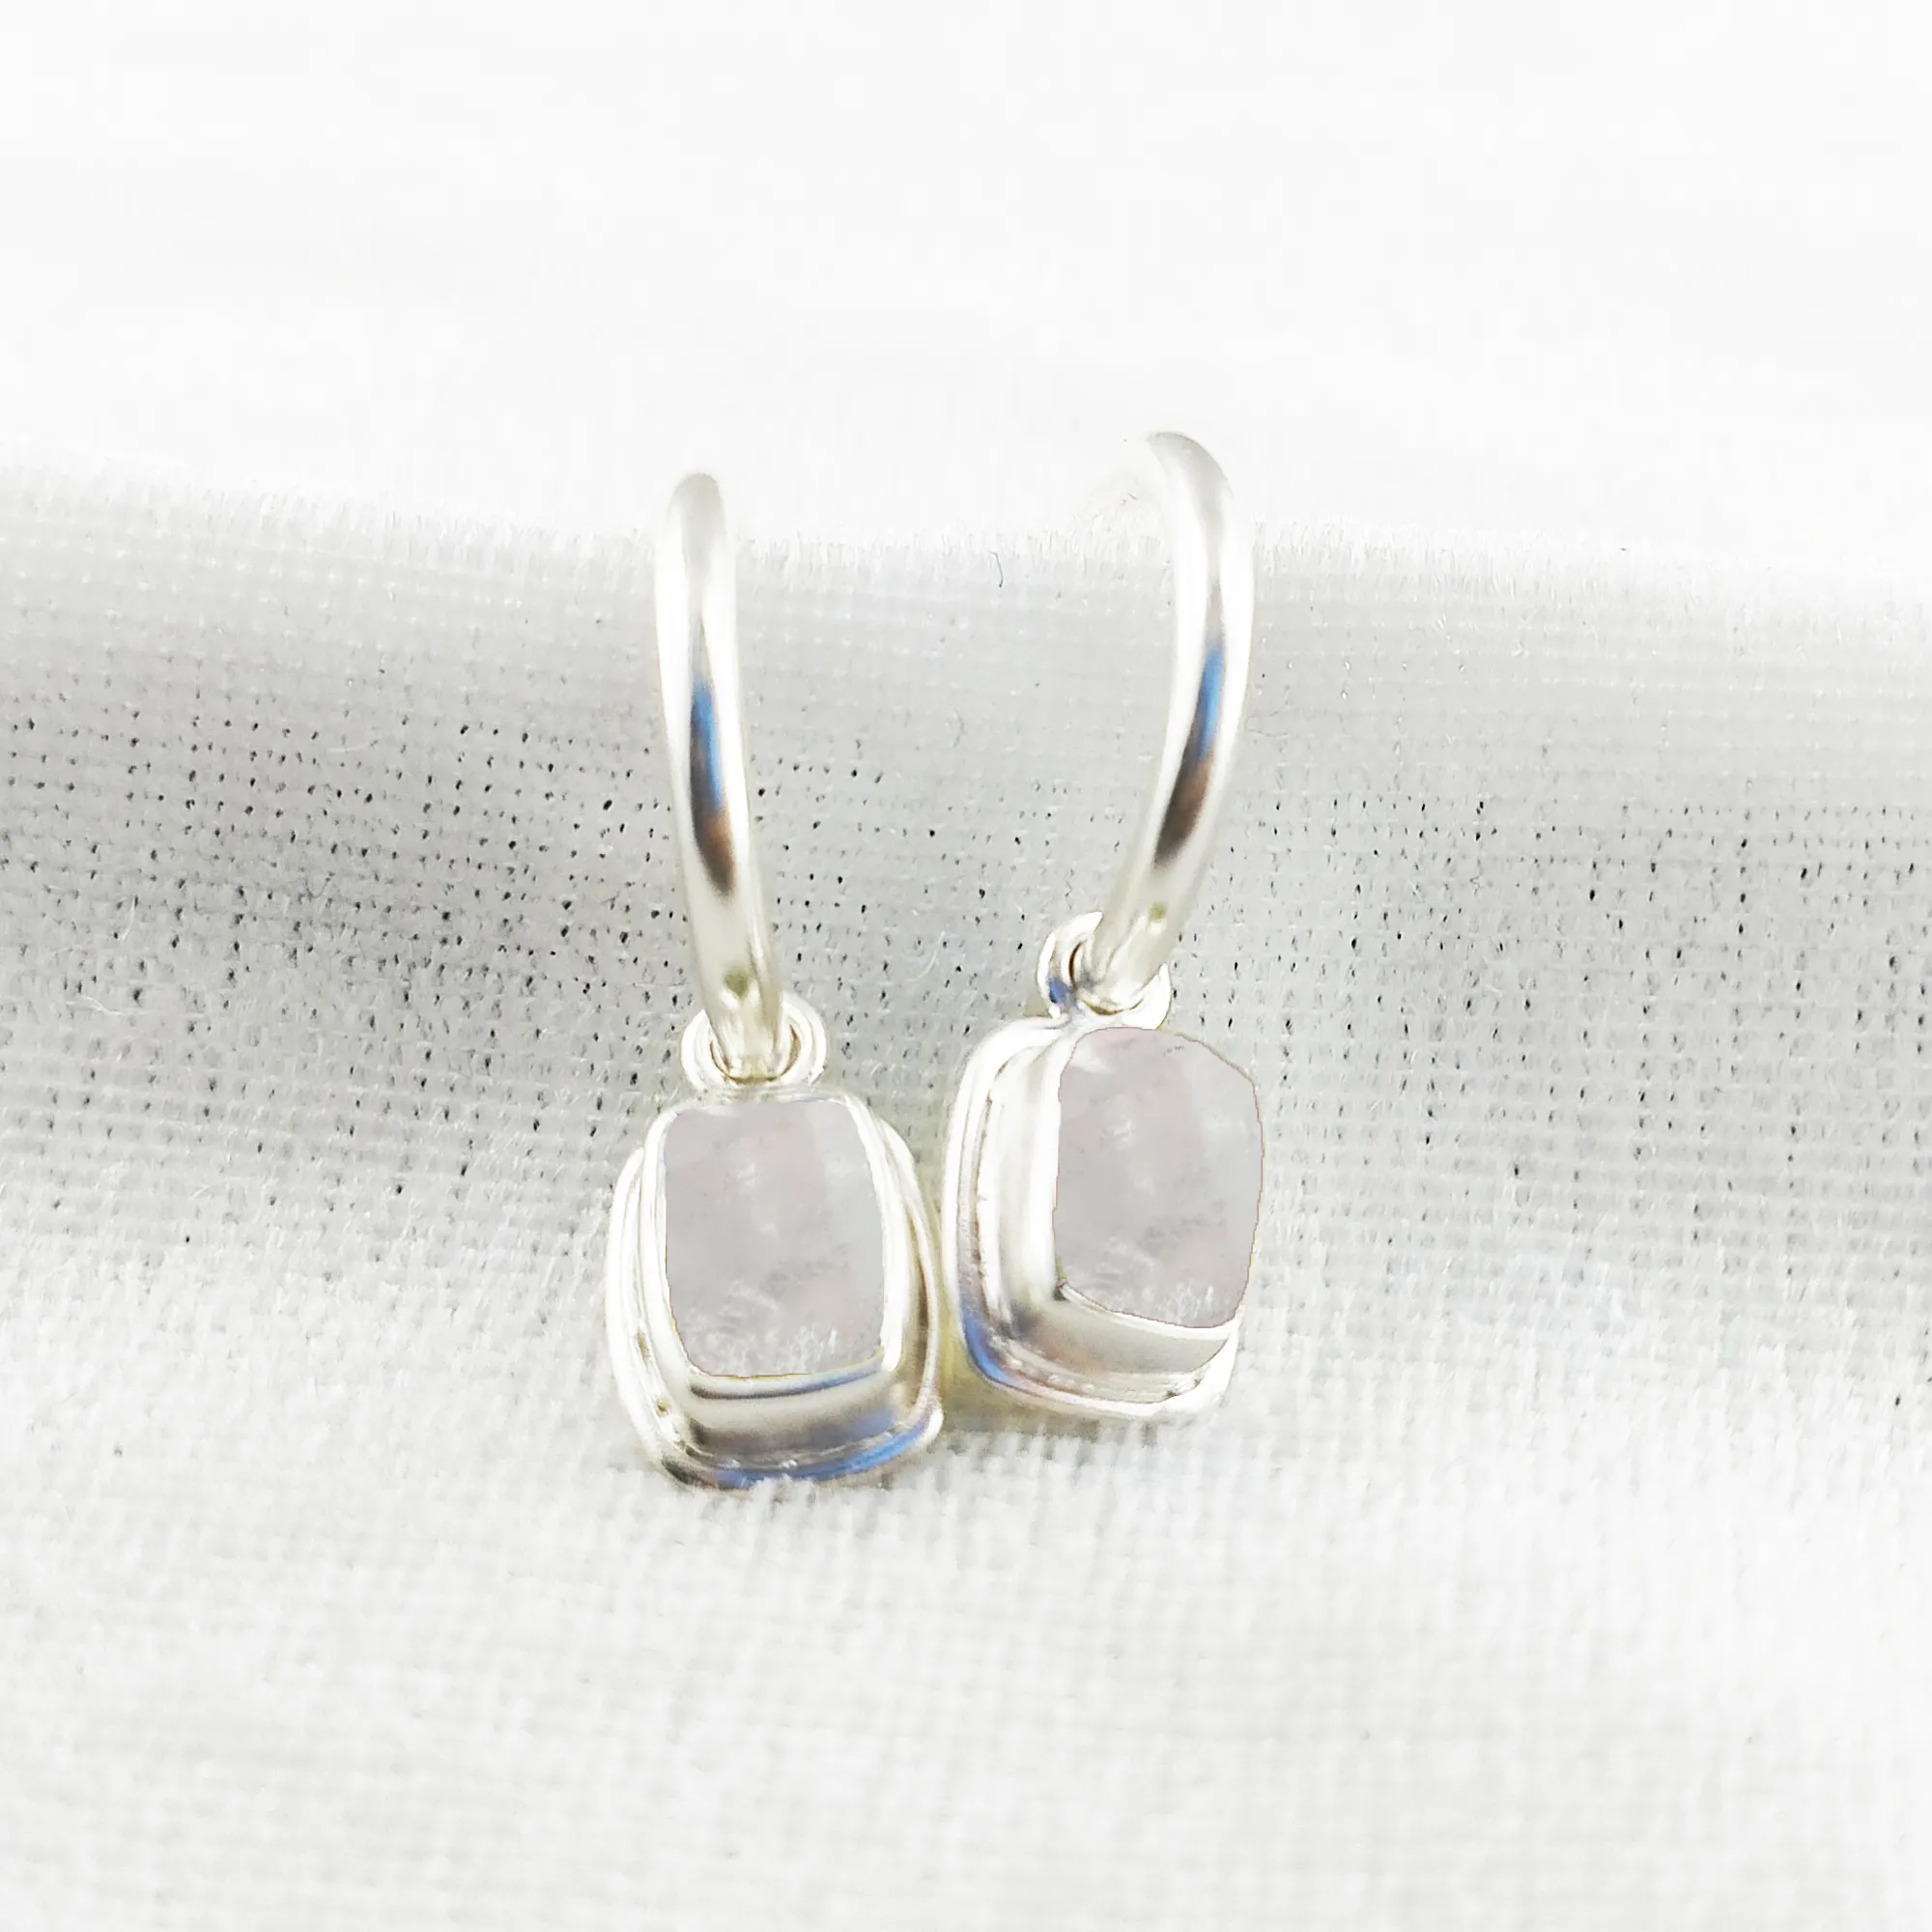 Clear Quartz Gemstone Hoop Earrings 925 Sterling Silver Birthstone Rectangle Shape Jewelry Earrings Findings